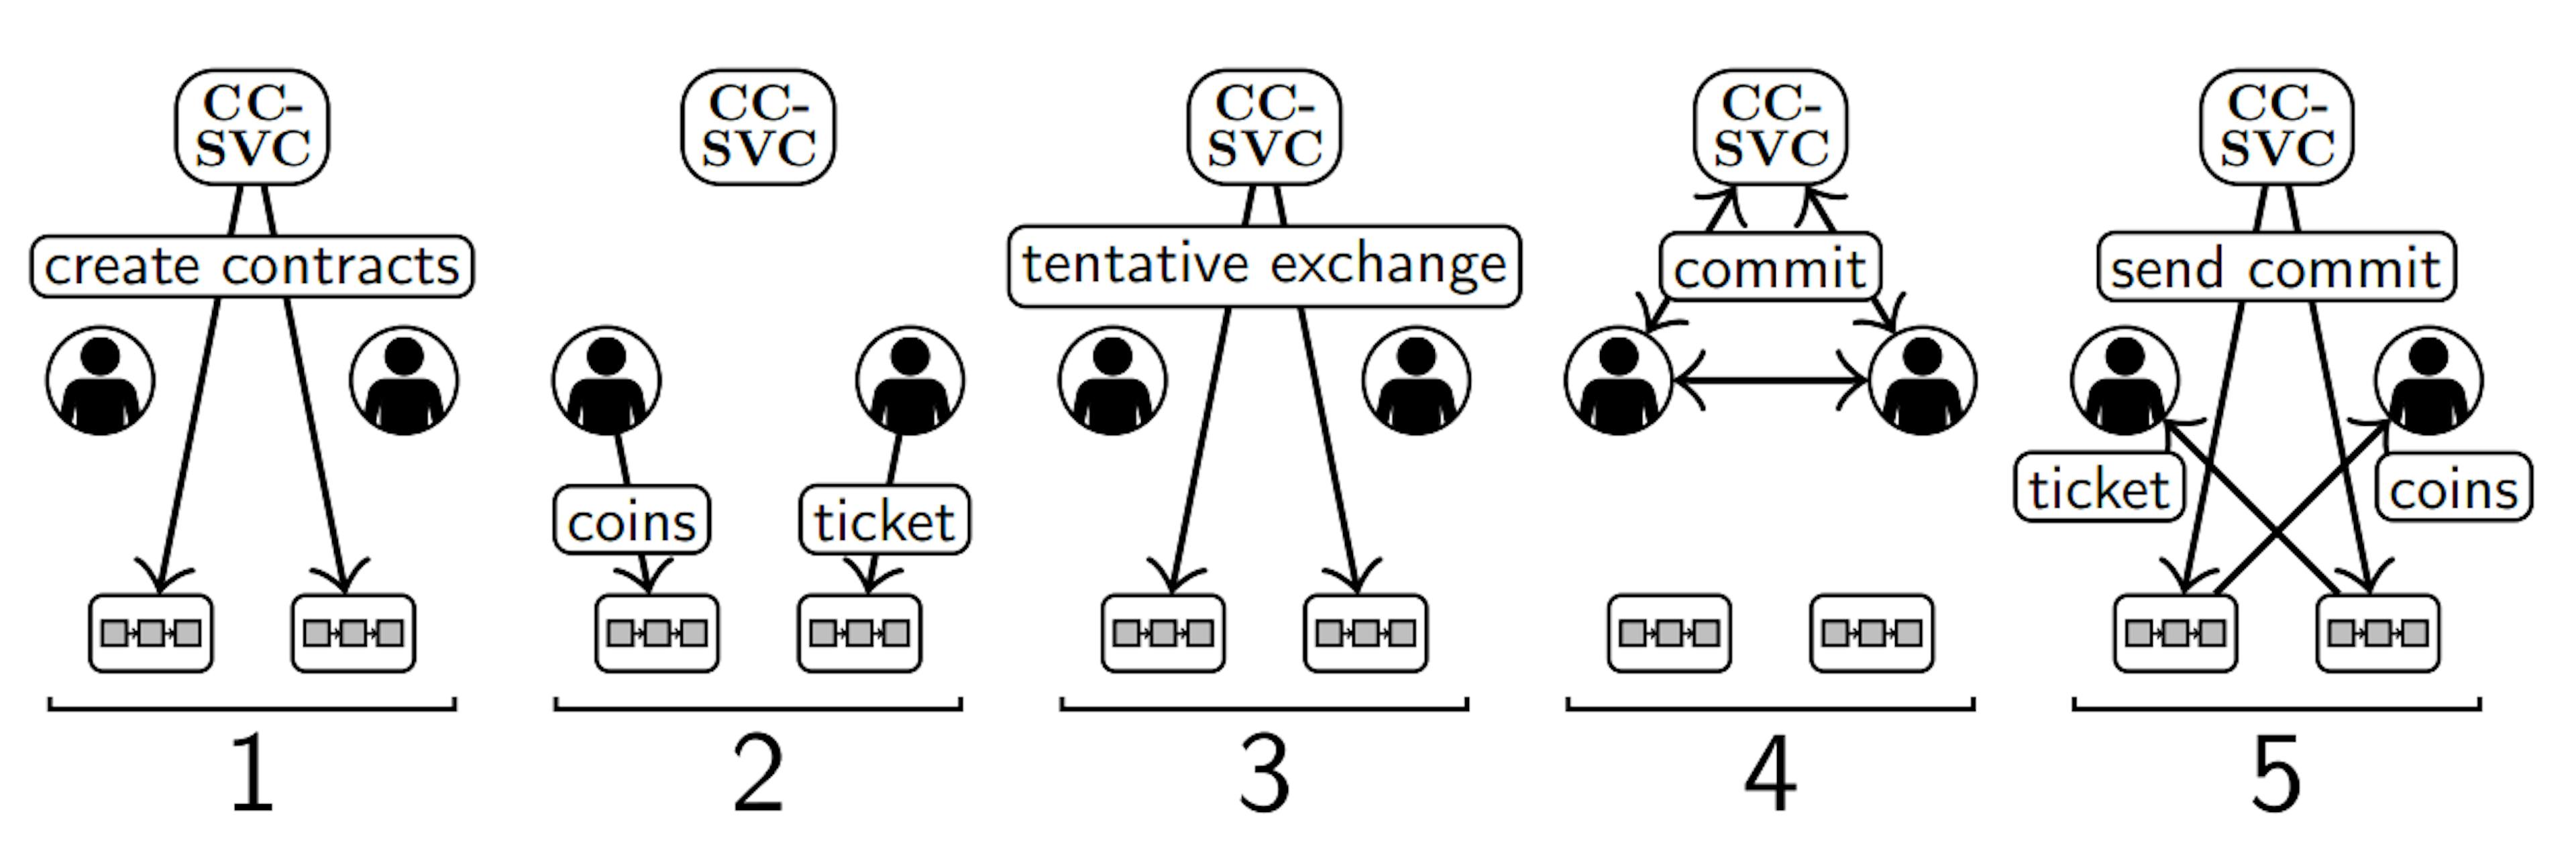 图 2. 在一个 CC-SVC（顶部）、两个用户（中间）和两个区块链（底部）的设置中对第 II-B 节的五个步骤的说明。未显示 Kafka 网络。